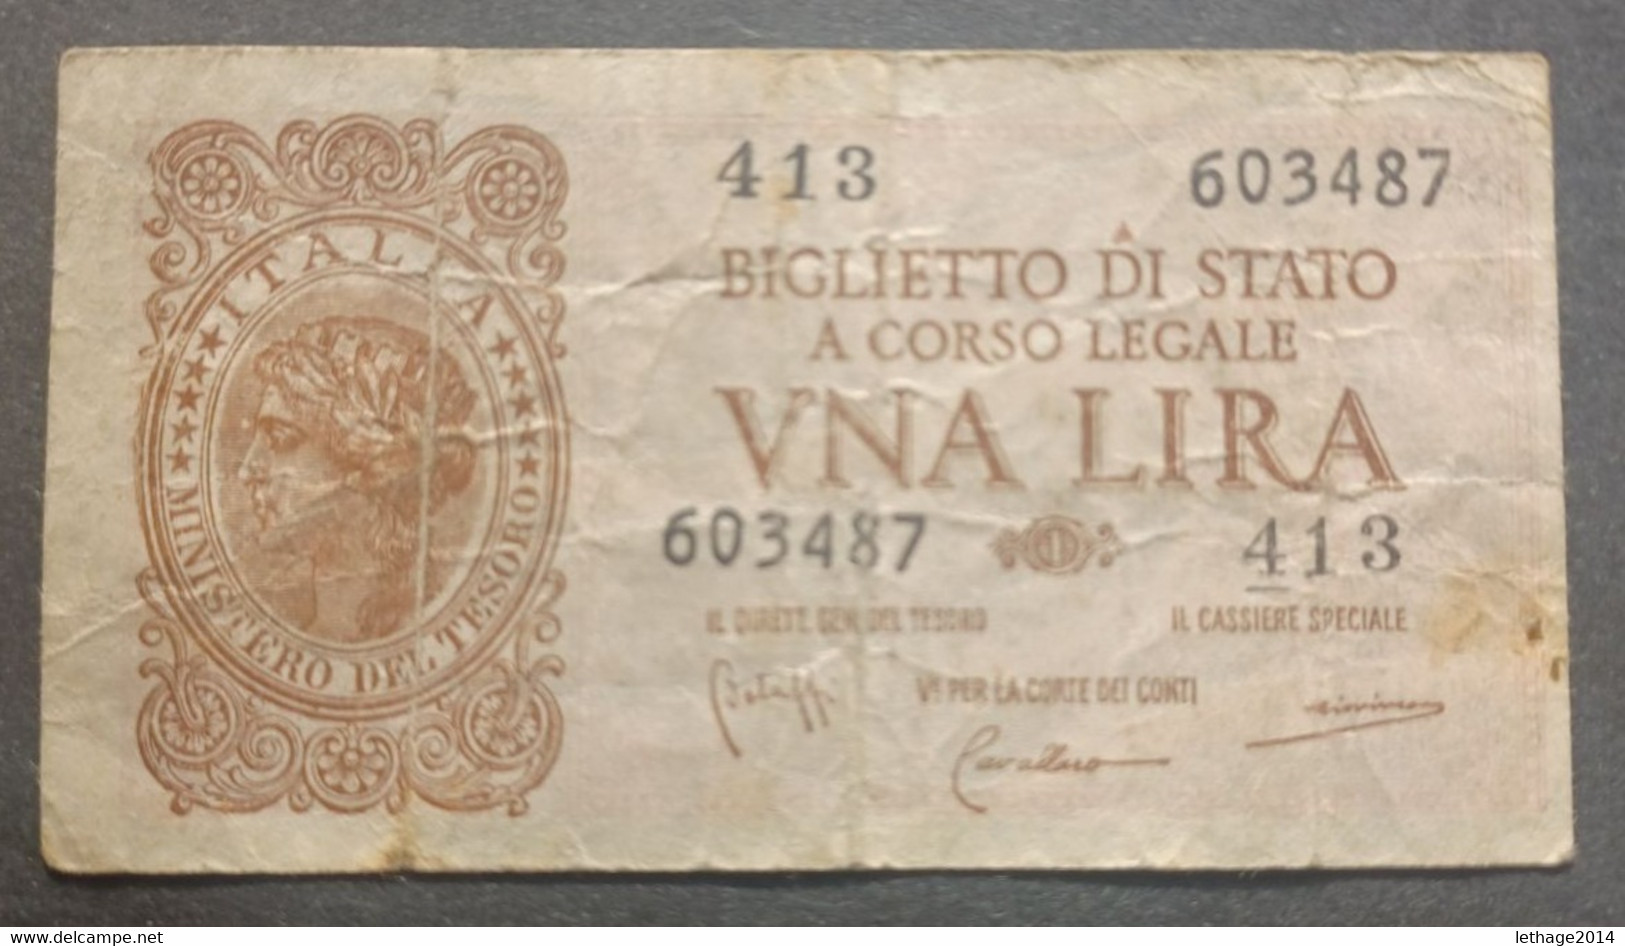 BANKNOTE REGNO D ITALIA 1 LIRA 1944 BOLAFFI CAVALLARO GIOVINCO CIRCULATED - Italië – 1 Lira